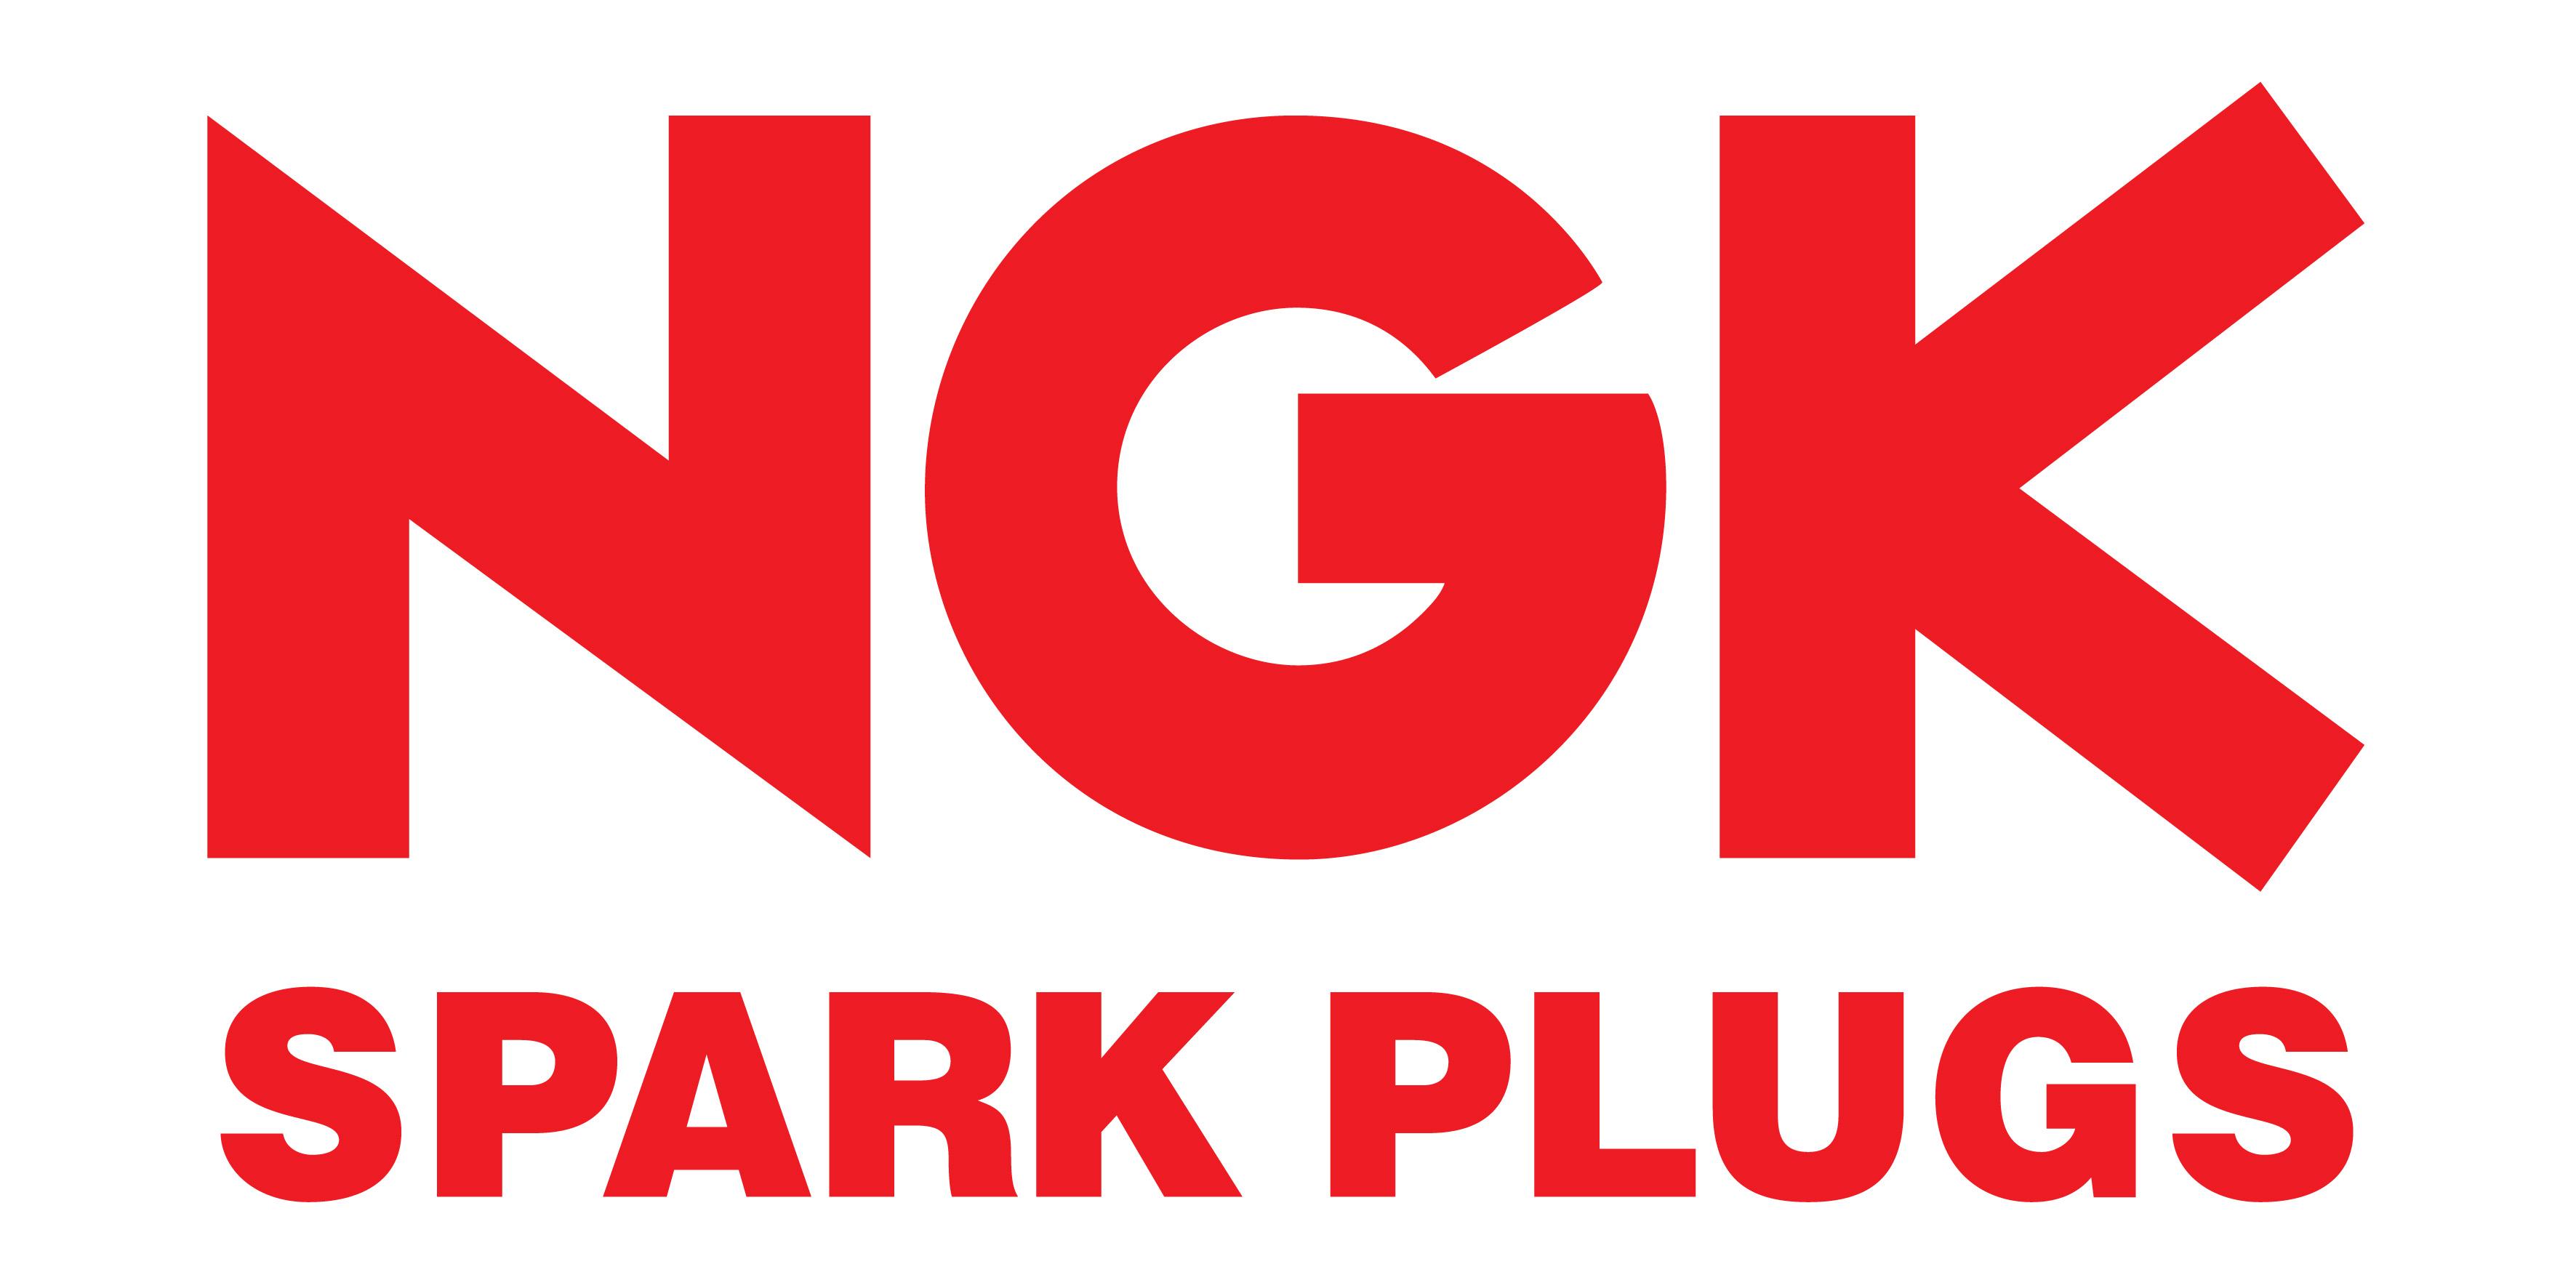 Red White Red Logo - Charlie Martin - NGK Logo No.4-Red white background